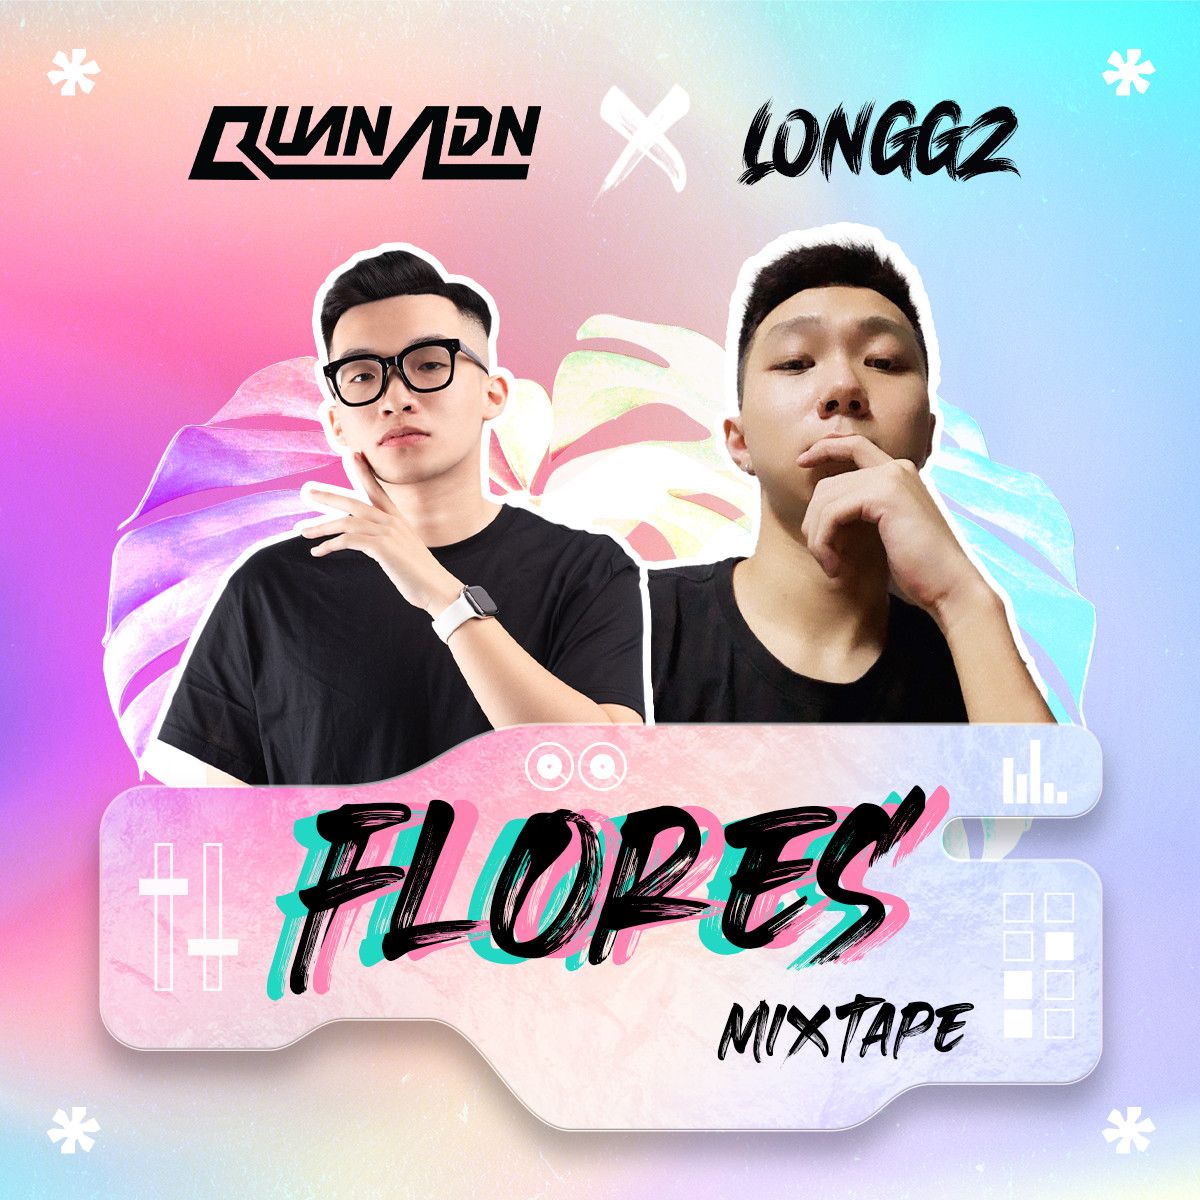 Shkarko Mixtape - Flores by Quan ADN & LONGGZ